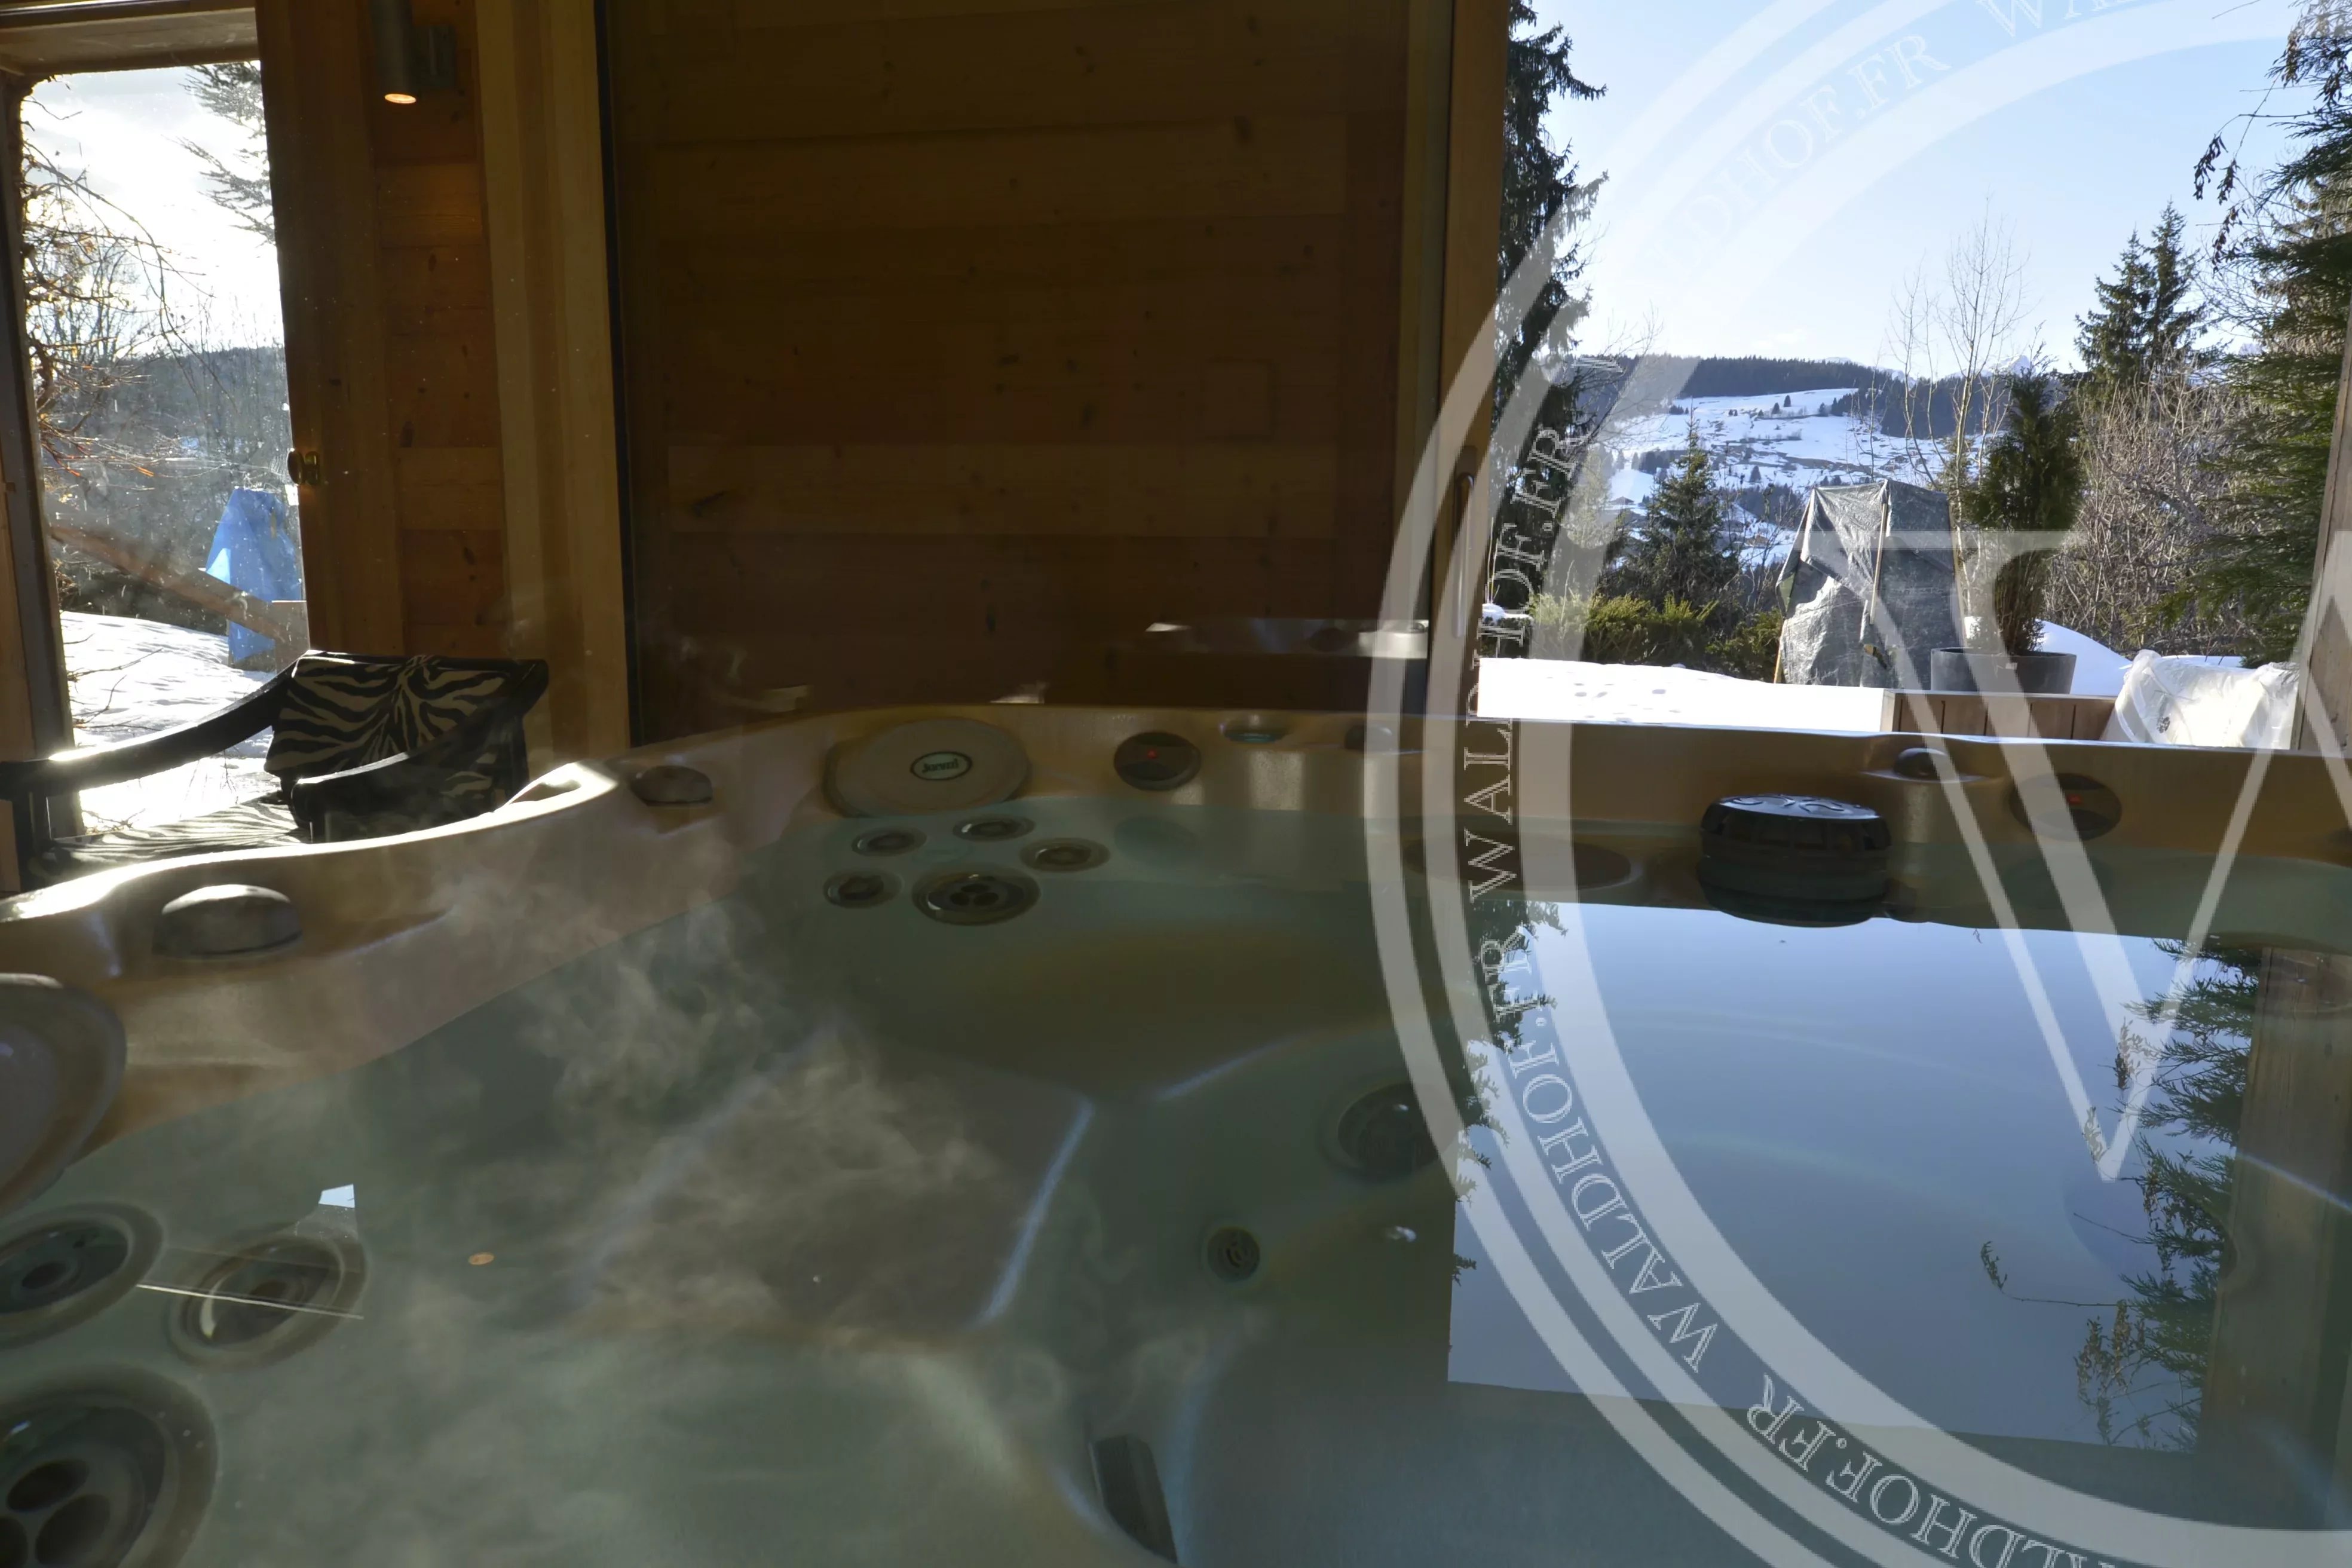 Chalet unique de 6 chambres avec accès direct aux pistes de ski à Megève, situé sur un terrain de 3900 m2.